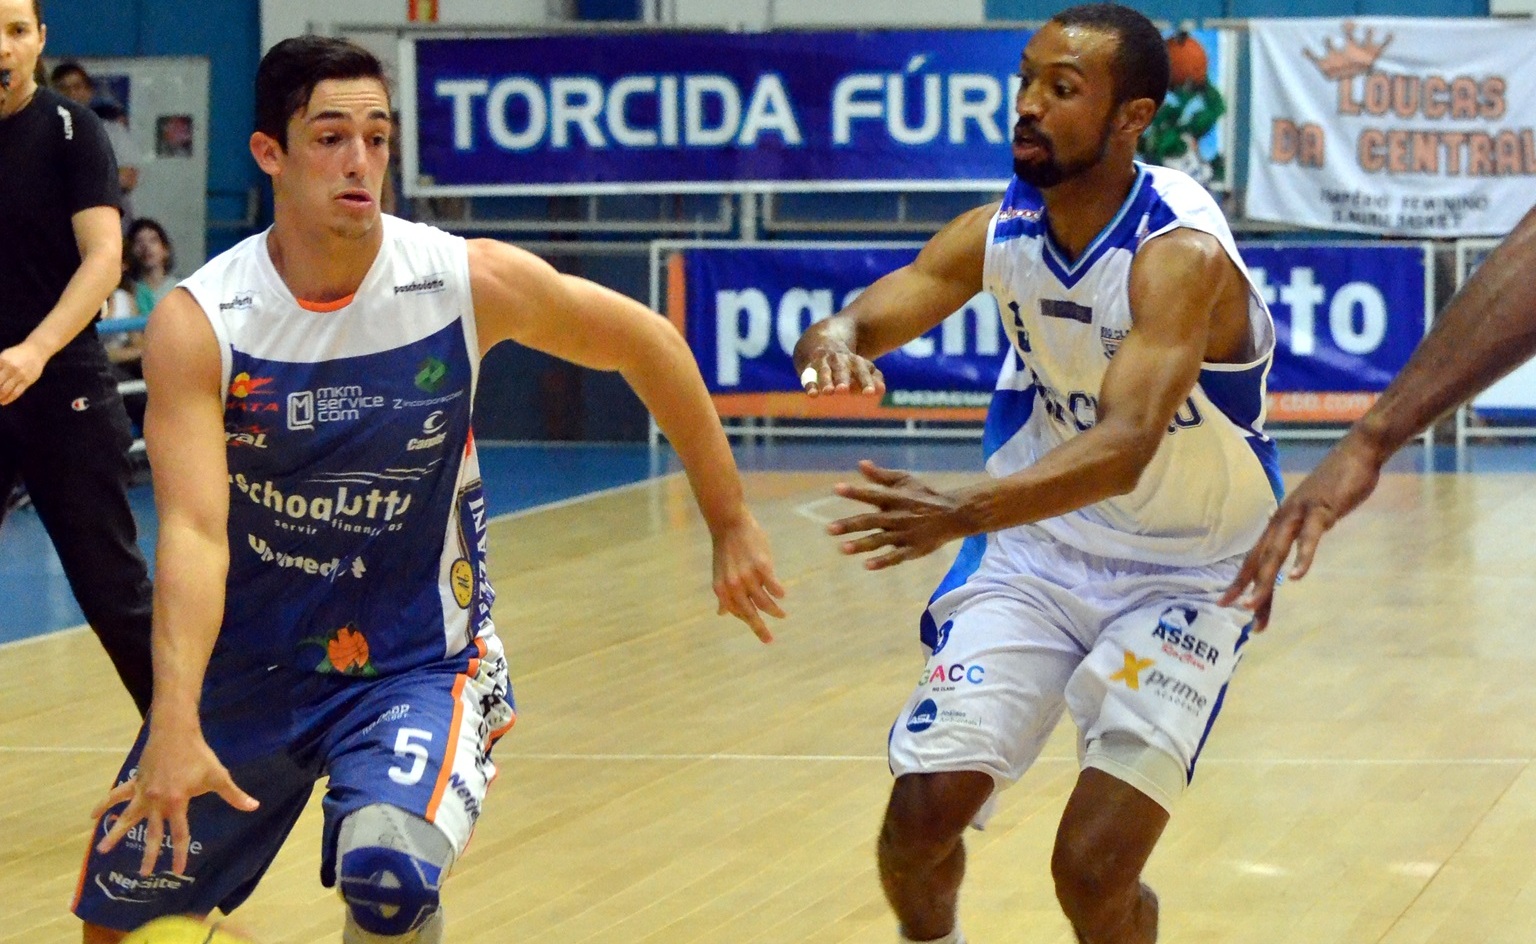 Mesmo que com ambições diferentes, Rio Claro e Bauru entrarão em quadra com um objetivo em comum: a vitória (Henrique Costa/Bauru Basket)